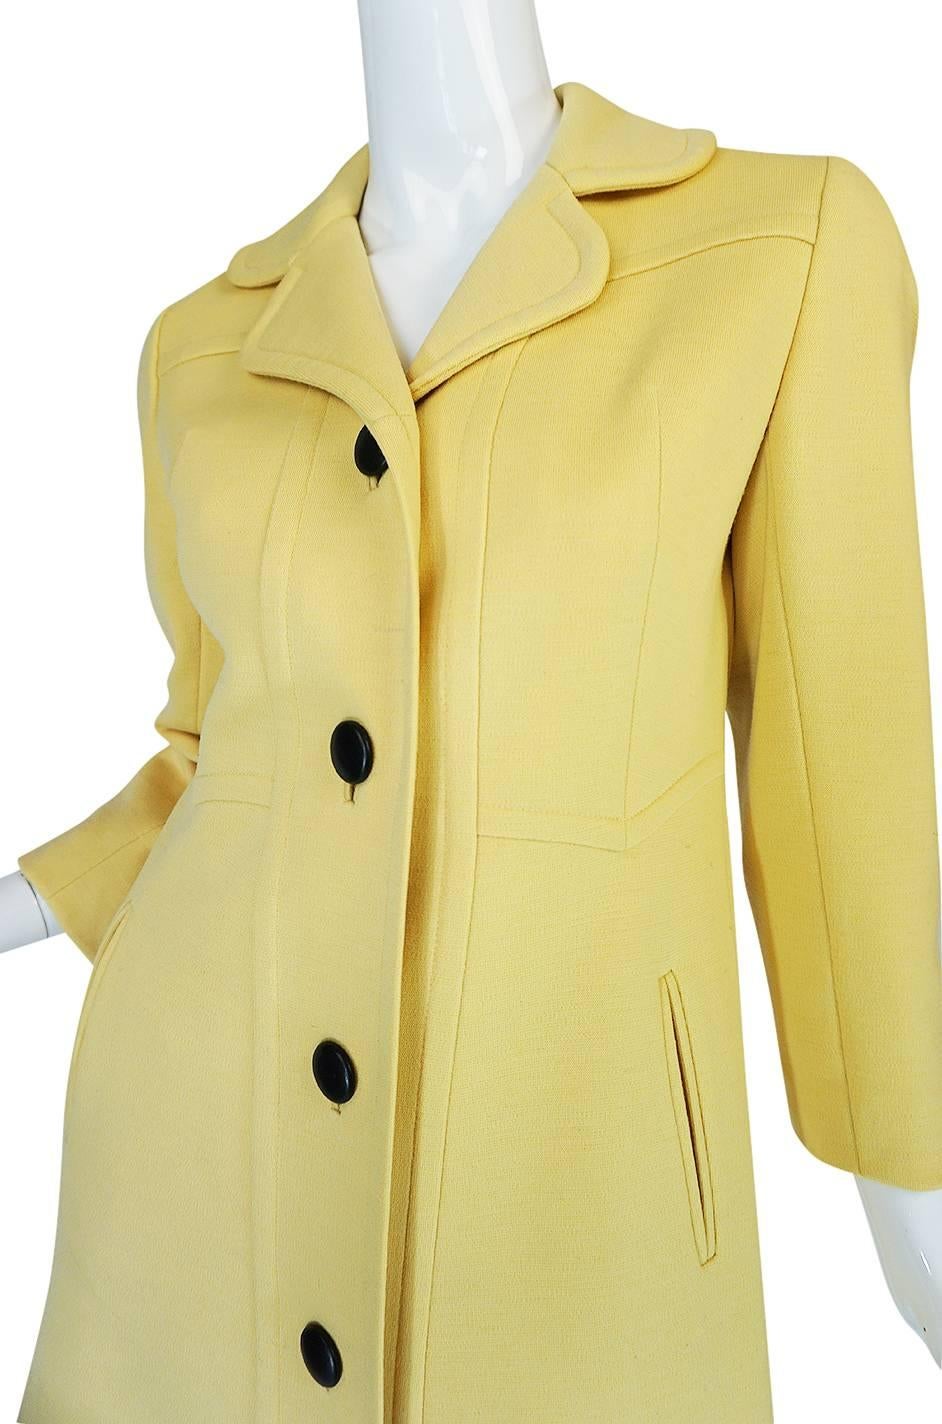 Chic 1970s Pierre Cardin RTW Sleek Little Yellow Coat 3